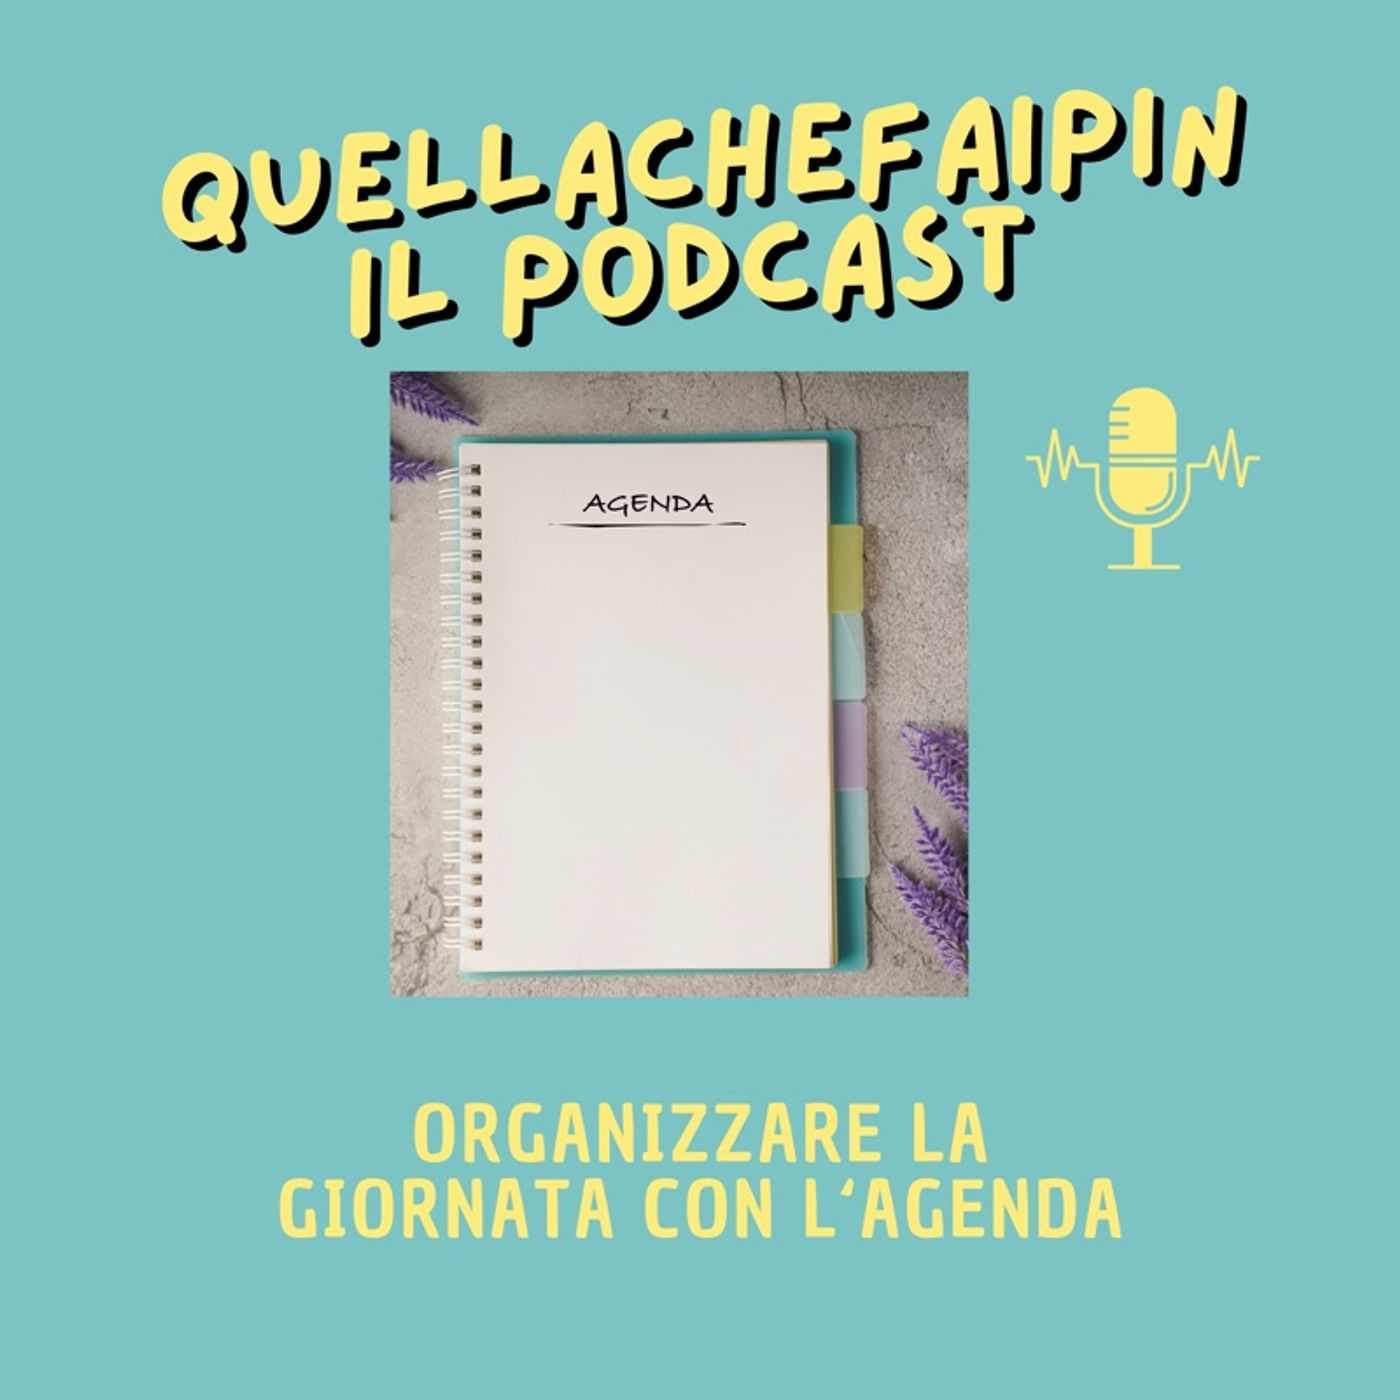 Organizzare la giornata con l’agenda  - Quellachefaipin